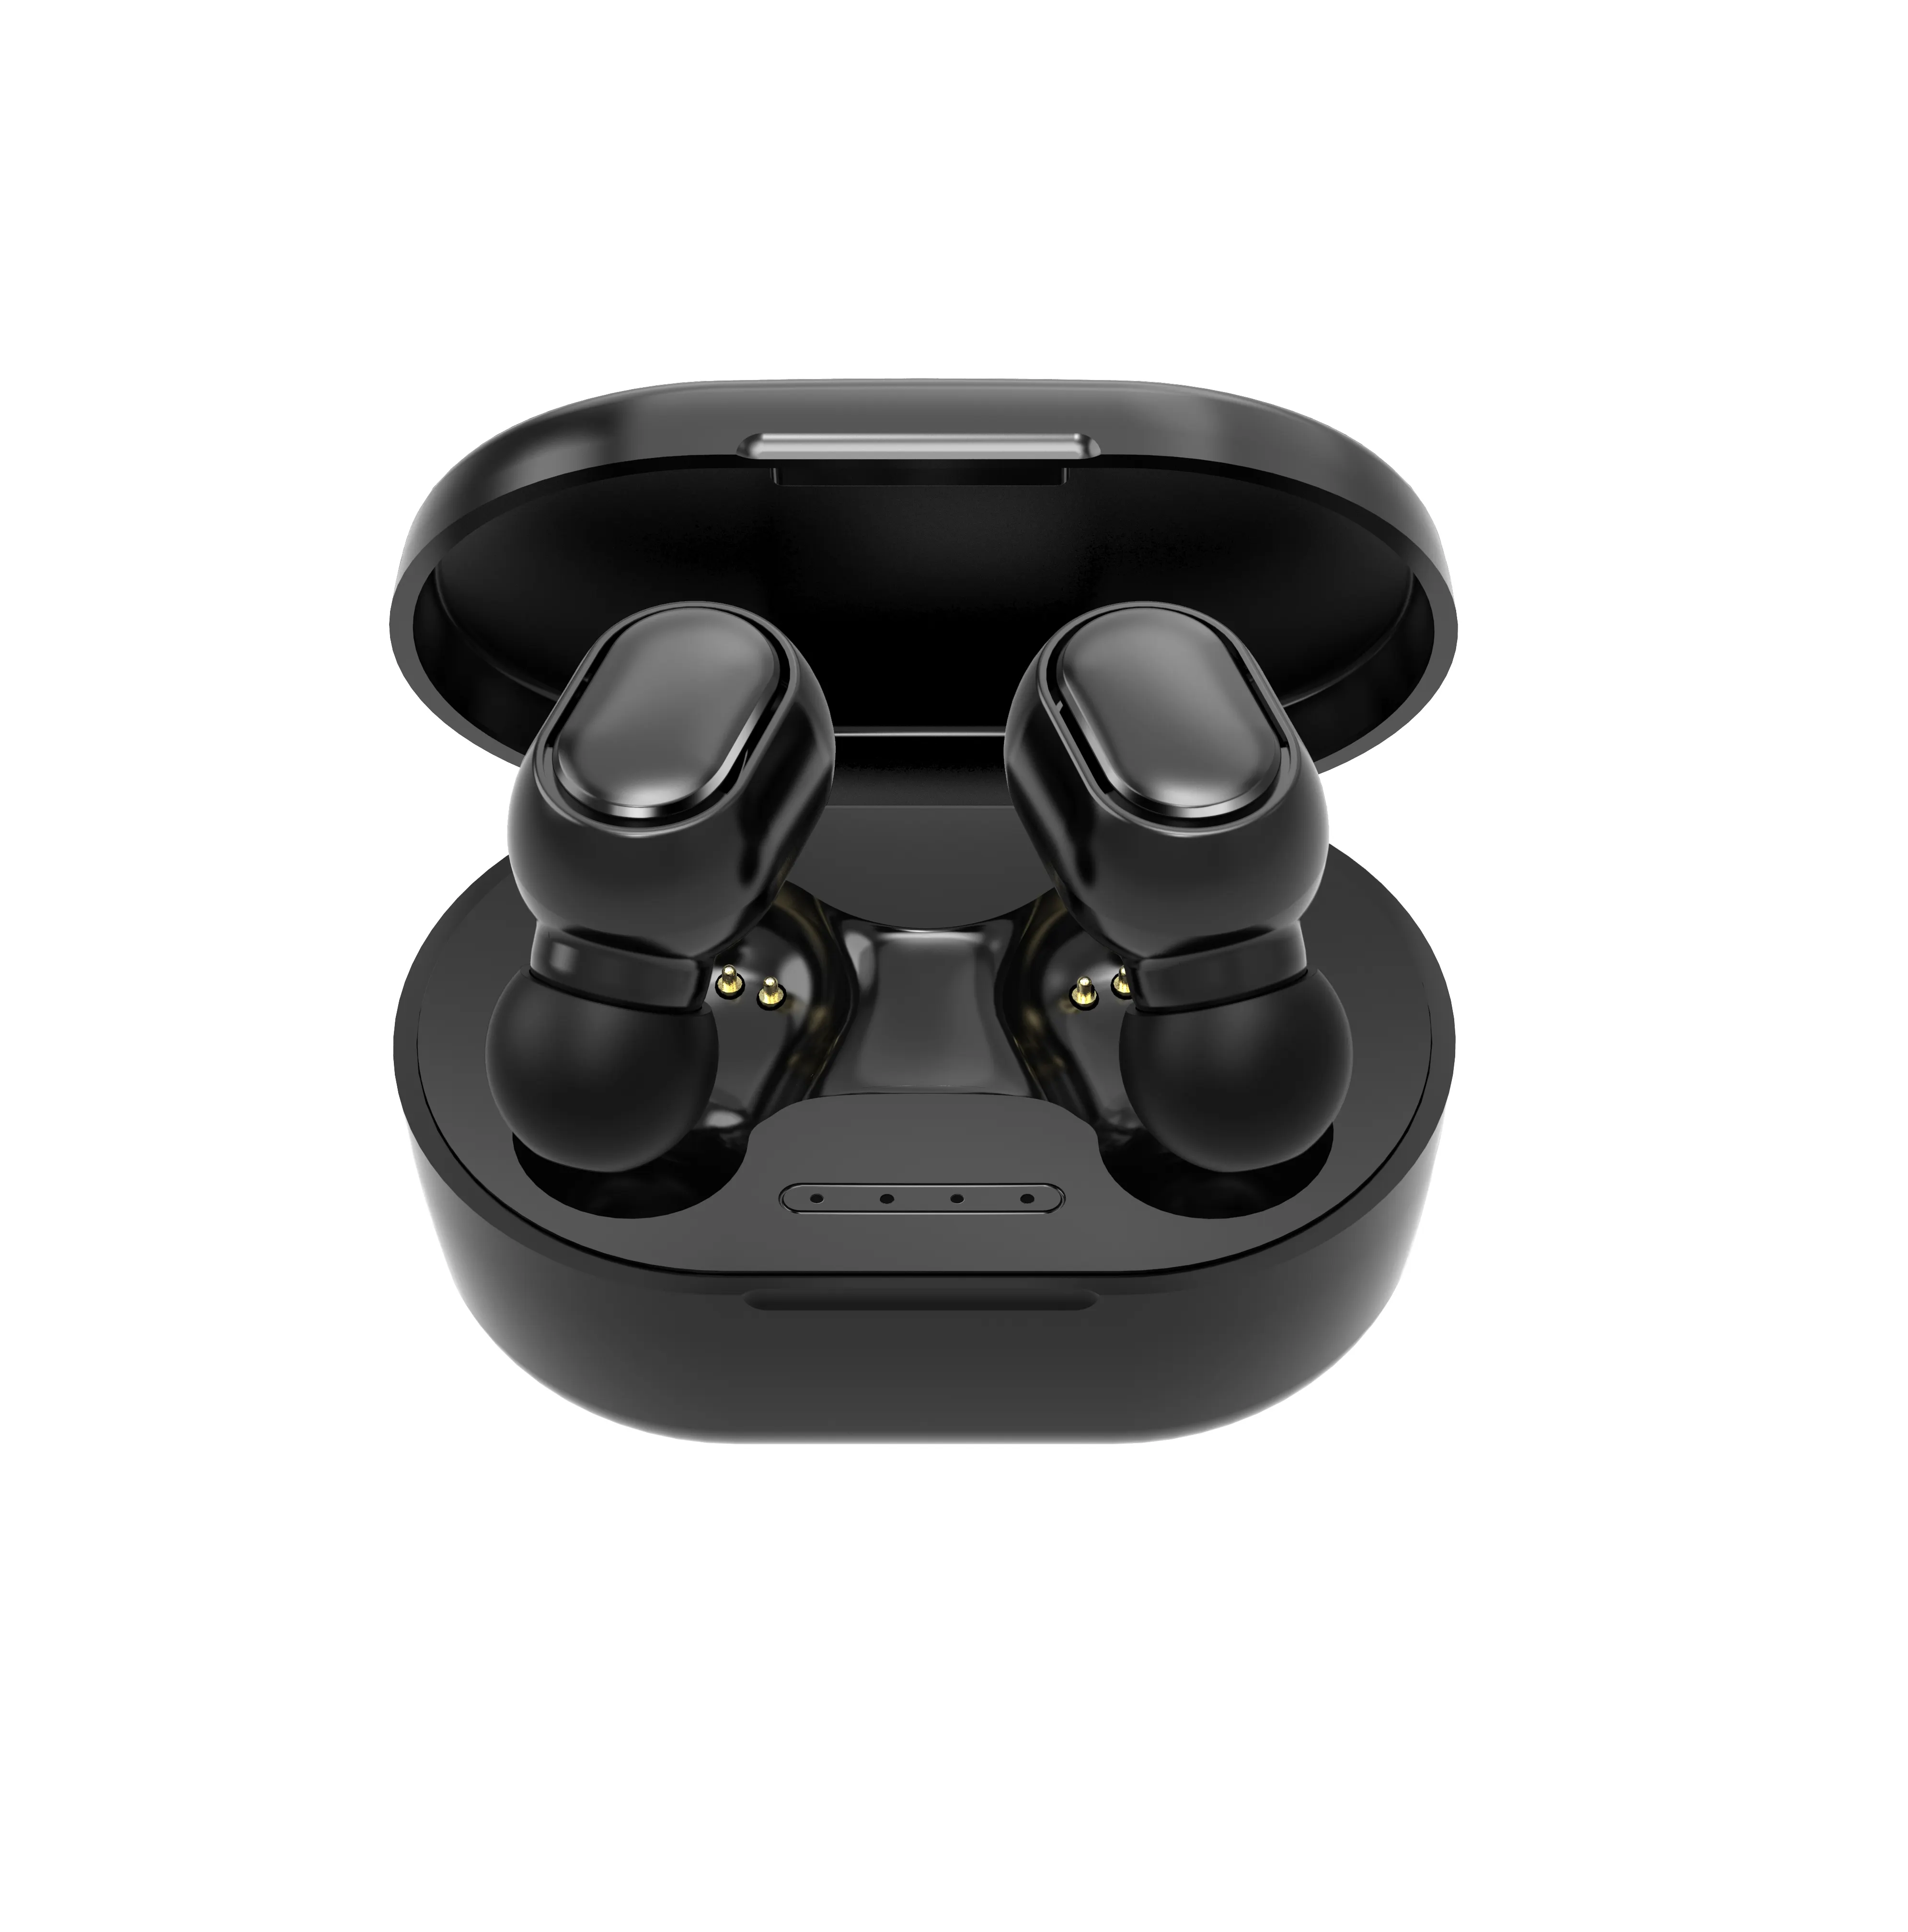 הזול ביותר מיני TWS אלחוטי Bluetooth אוזניות עבור טלפון חכם Bluetooth V5.0 ספורט אוזניות A6S אמיתי סטריאו אלחוטי אוזניות